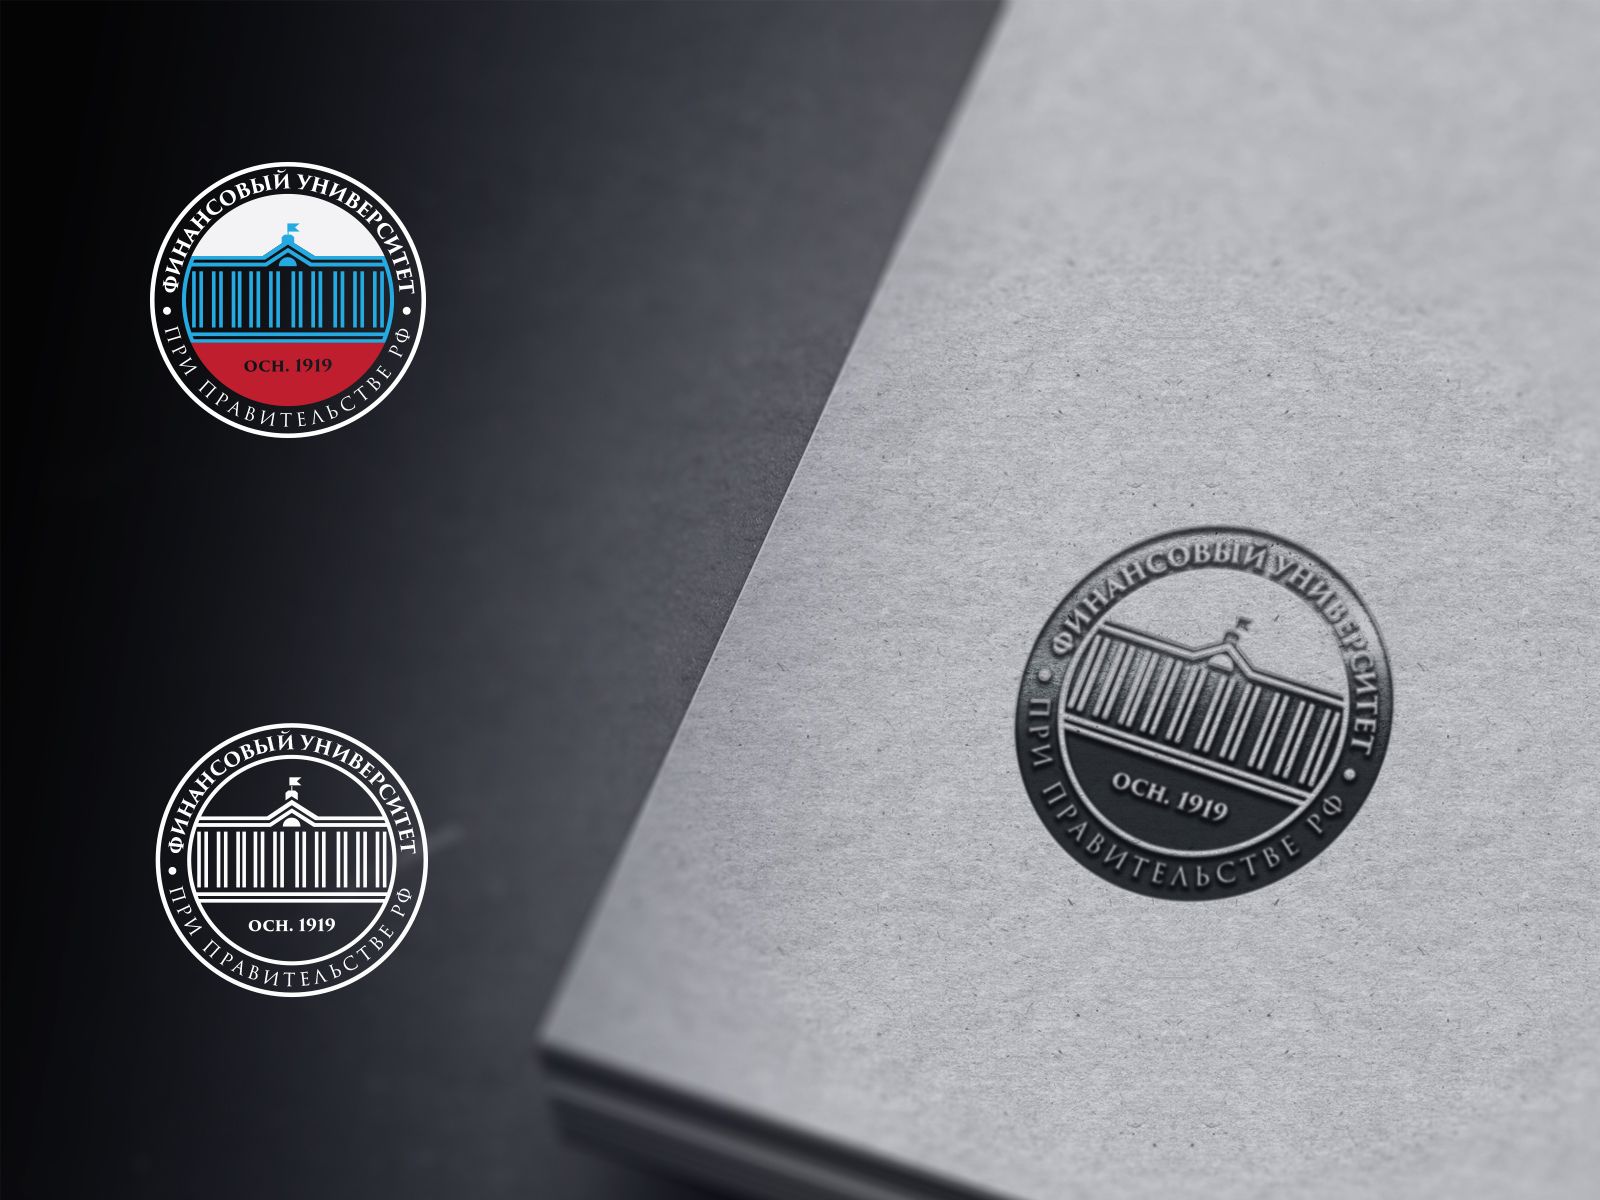 Лого и фирменный стиль для Финансовый университет при Правительстве РФ - дизайнер U4po4mak